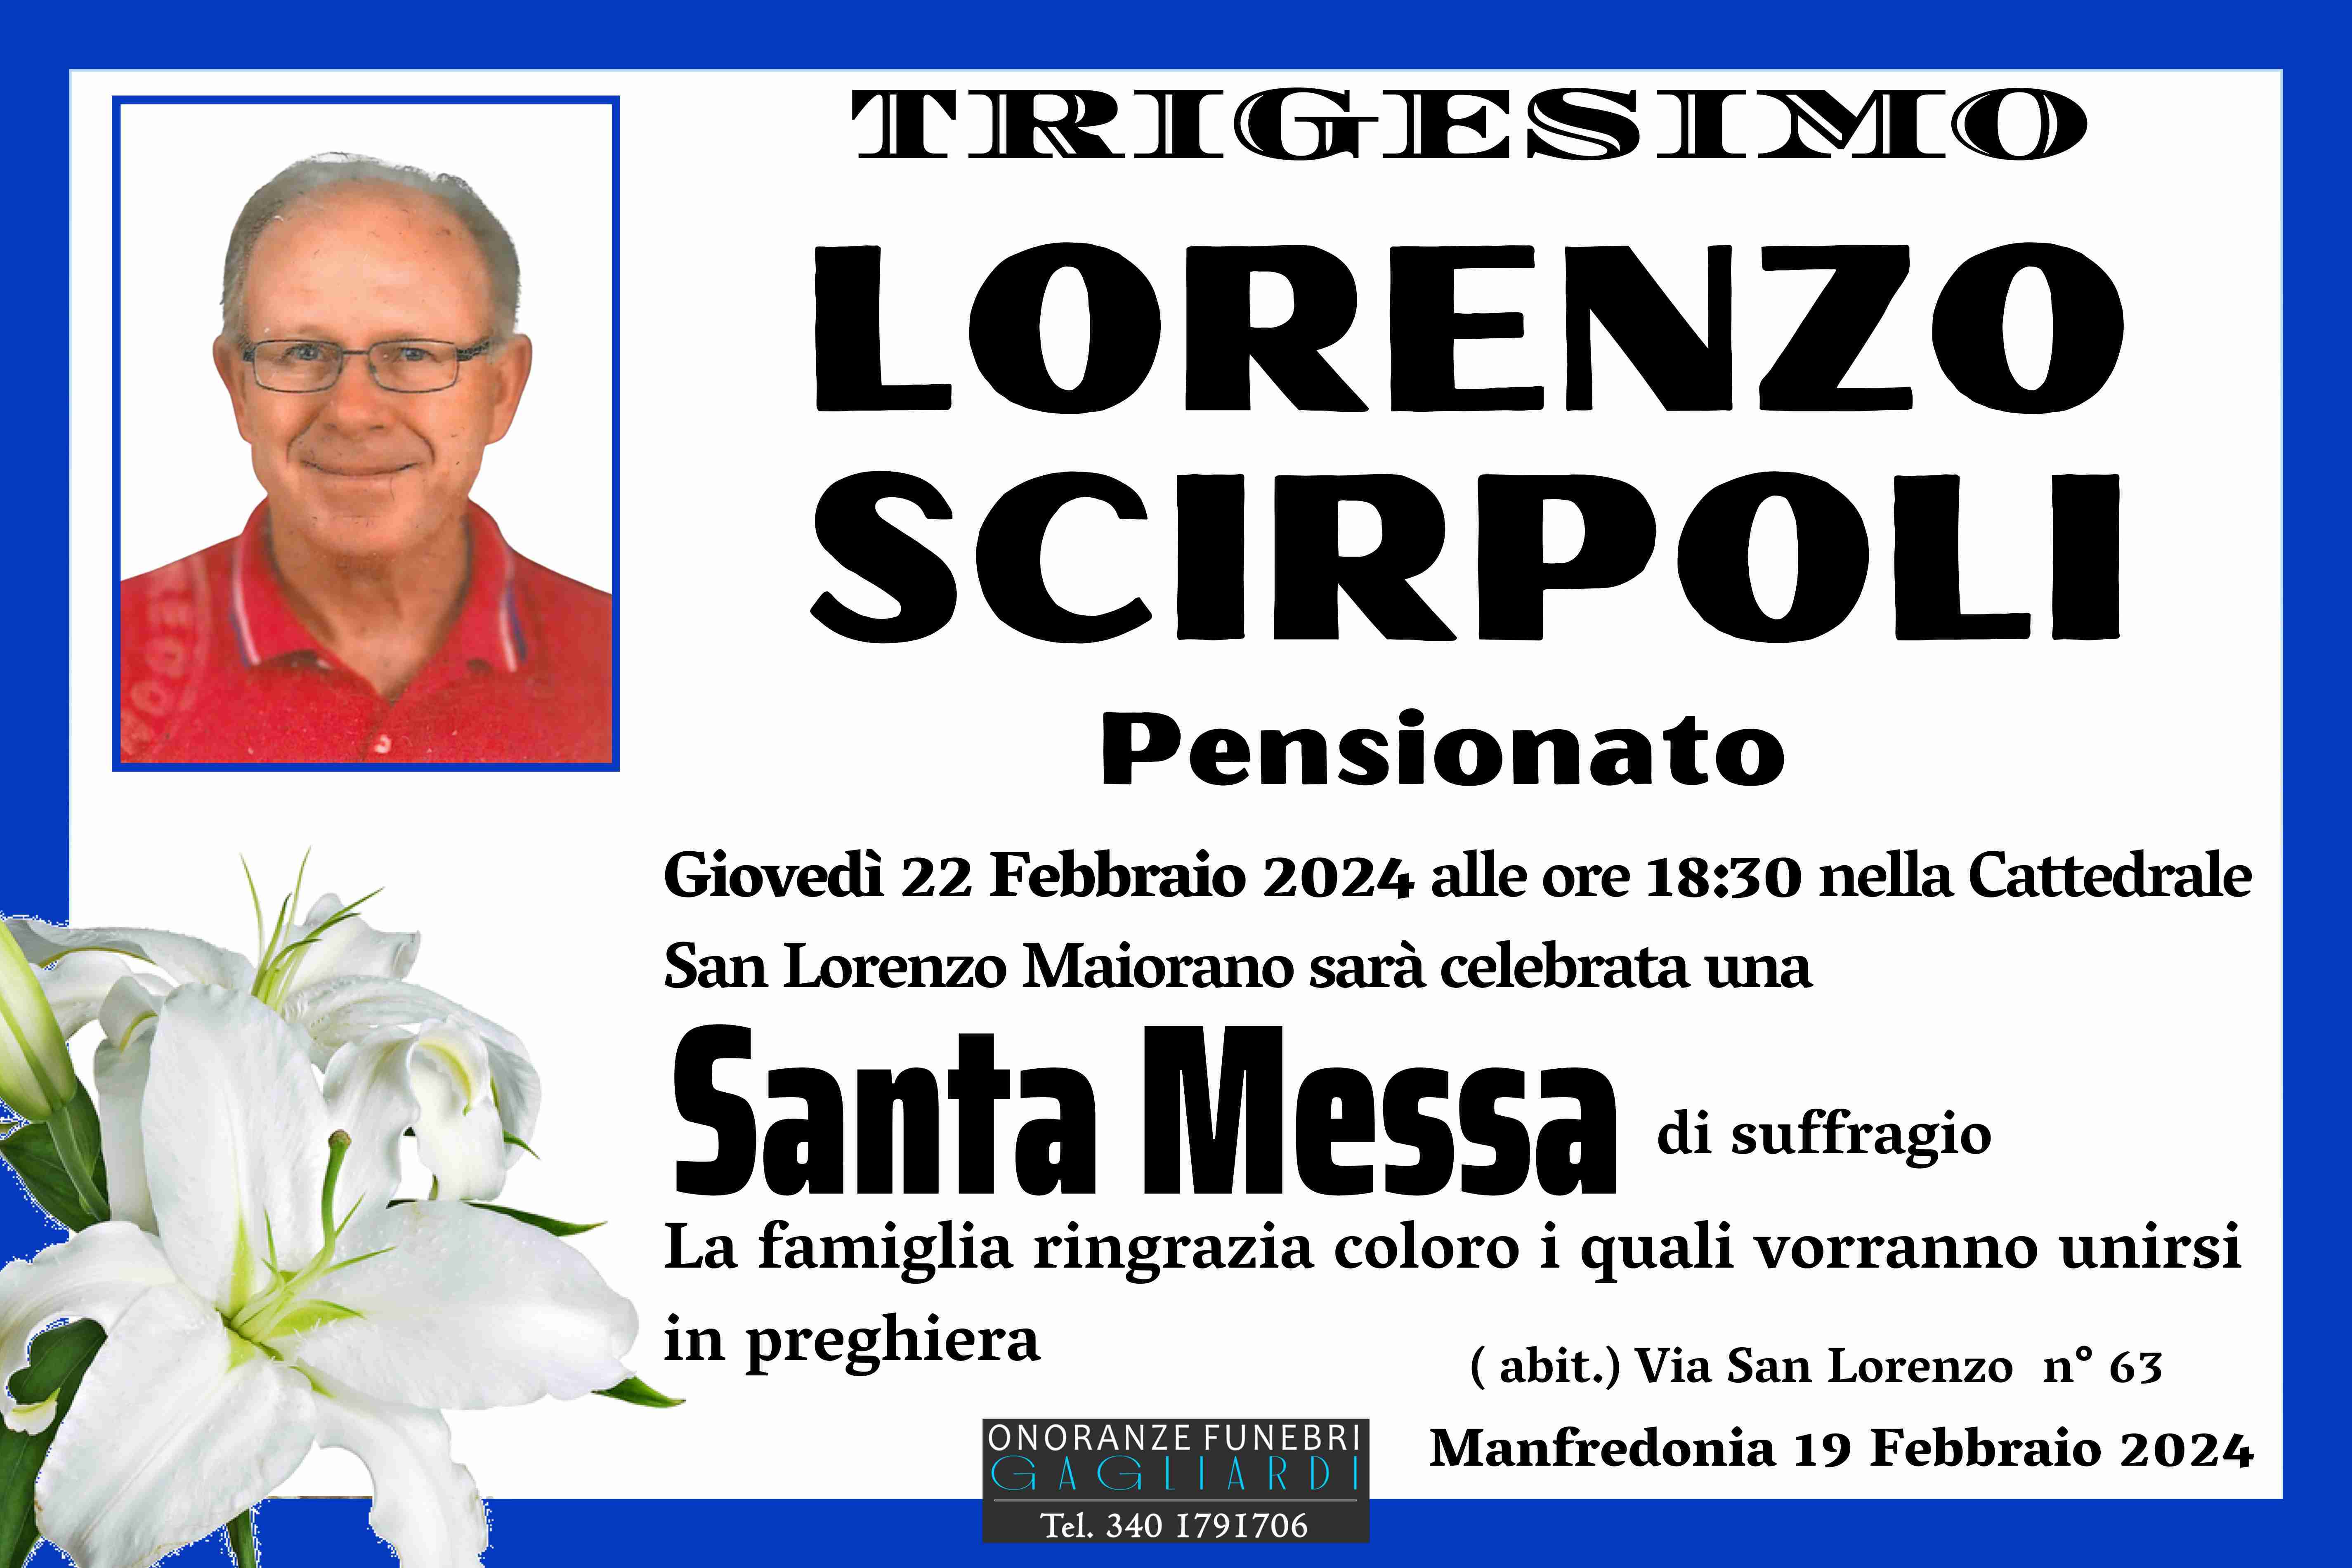 Lorenzo Scirpoli